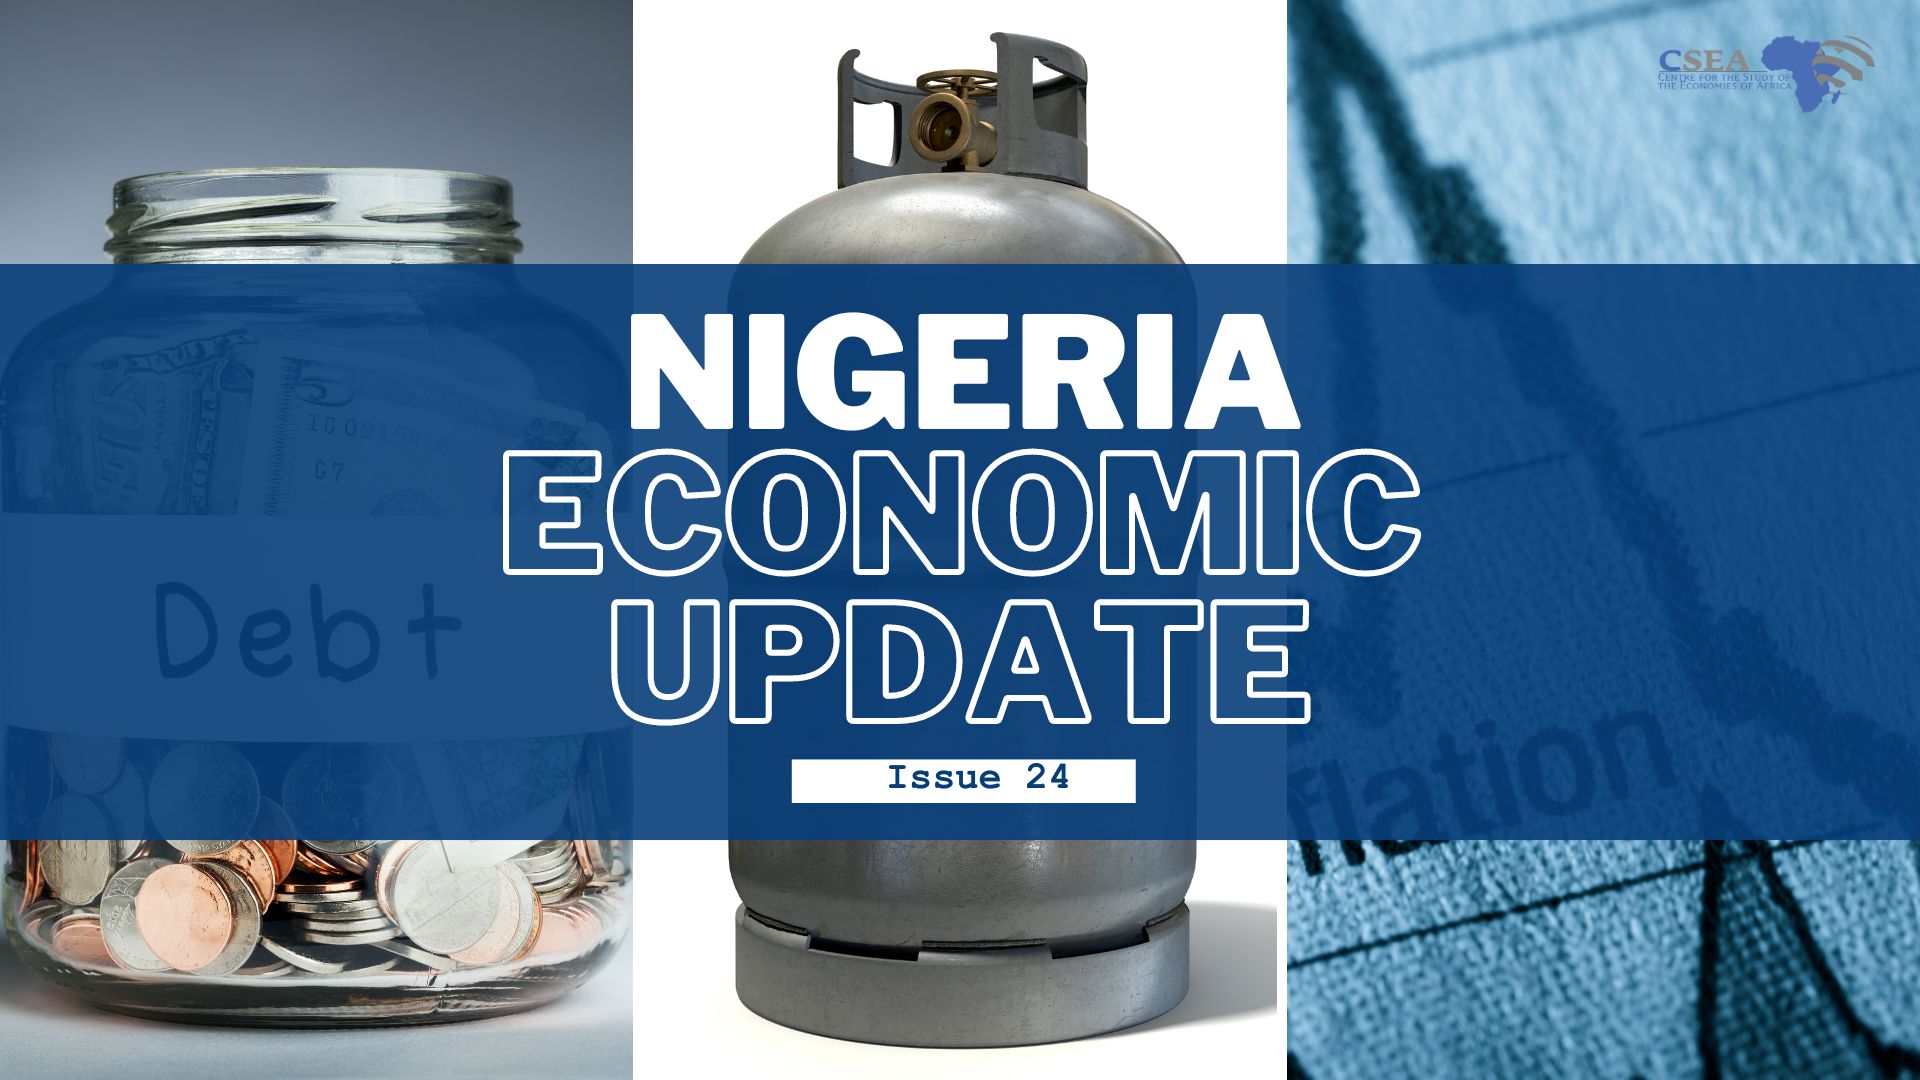 Nigeria Economic Update, Issue 24